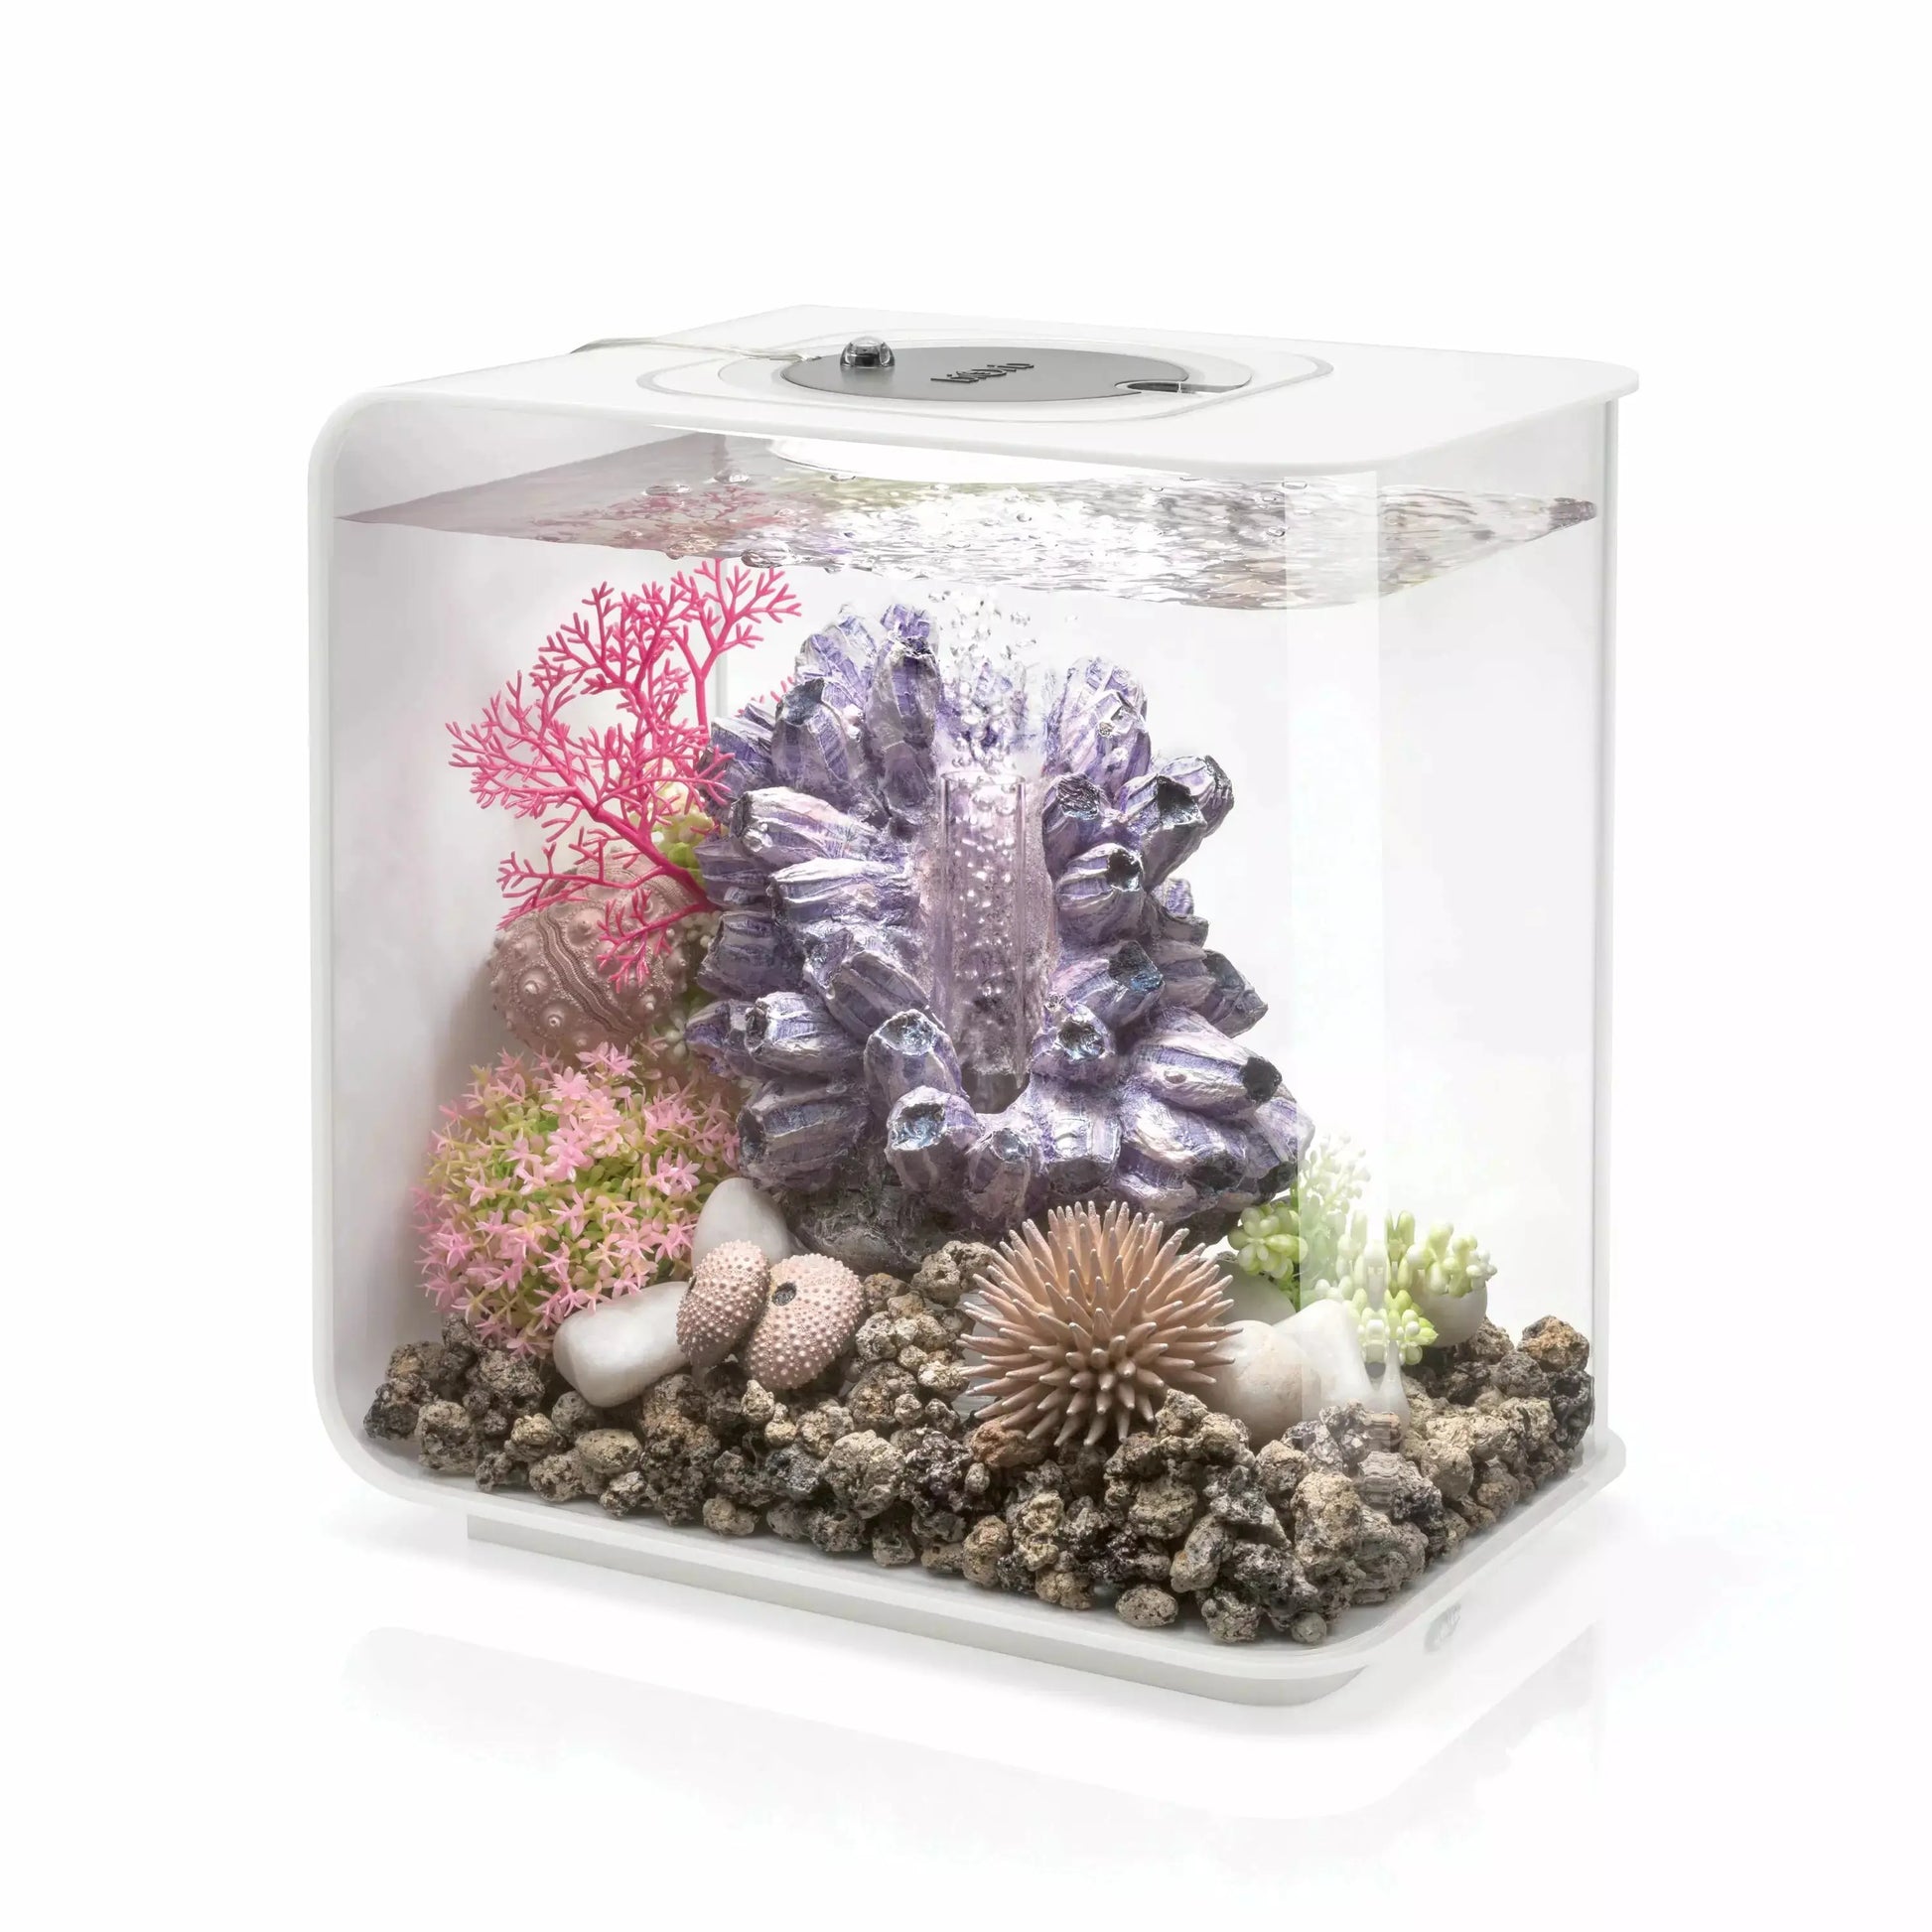 biOrb FLOW 15 Aquarium with MCR Light  4 gallon BiOrb